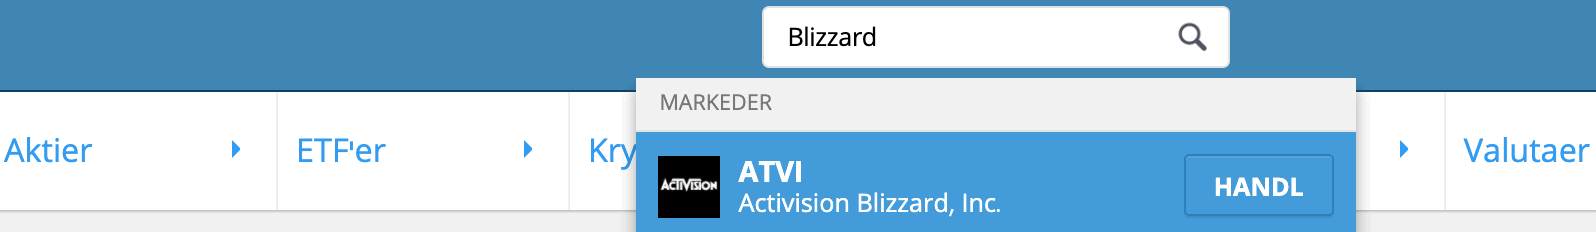 Soeg Blizzard Aktier